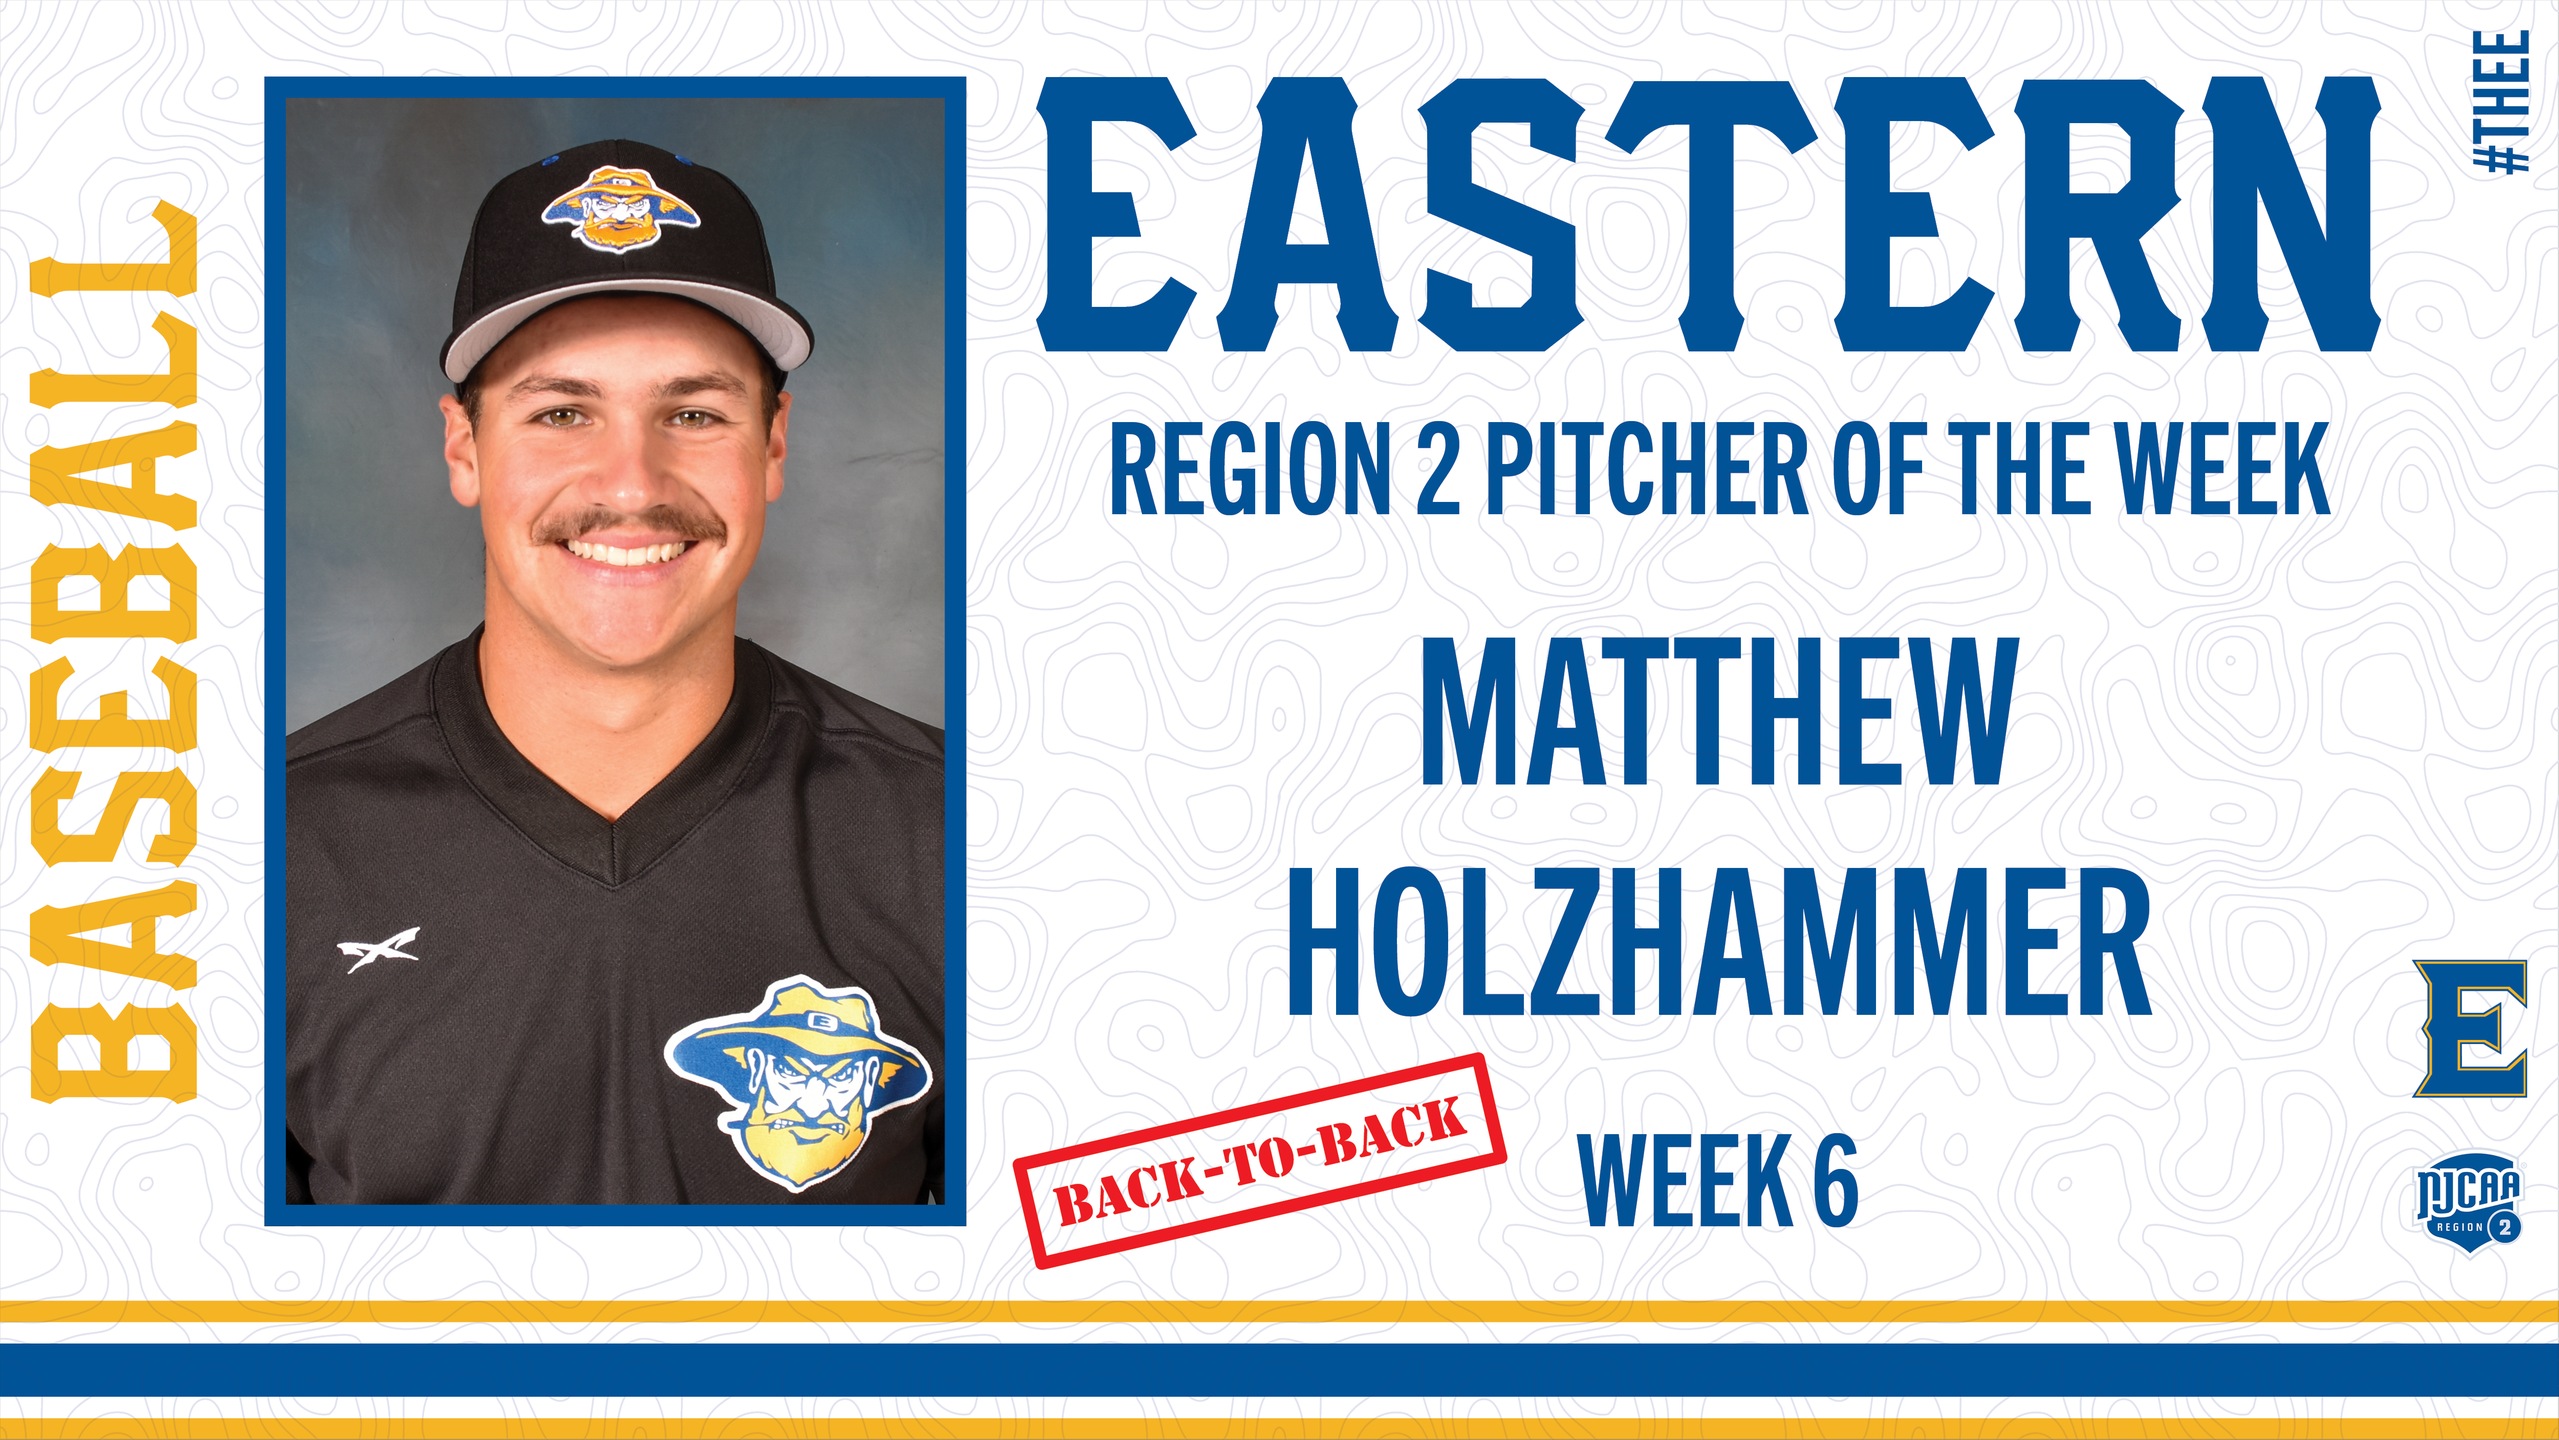 Matthew Holzhammer earns second NJCAA Region 2 Pitcher of the Week honors